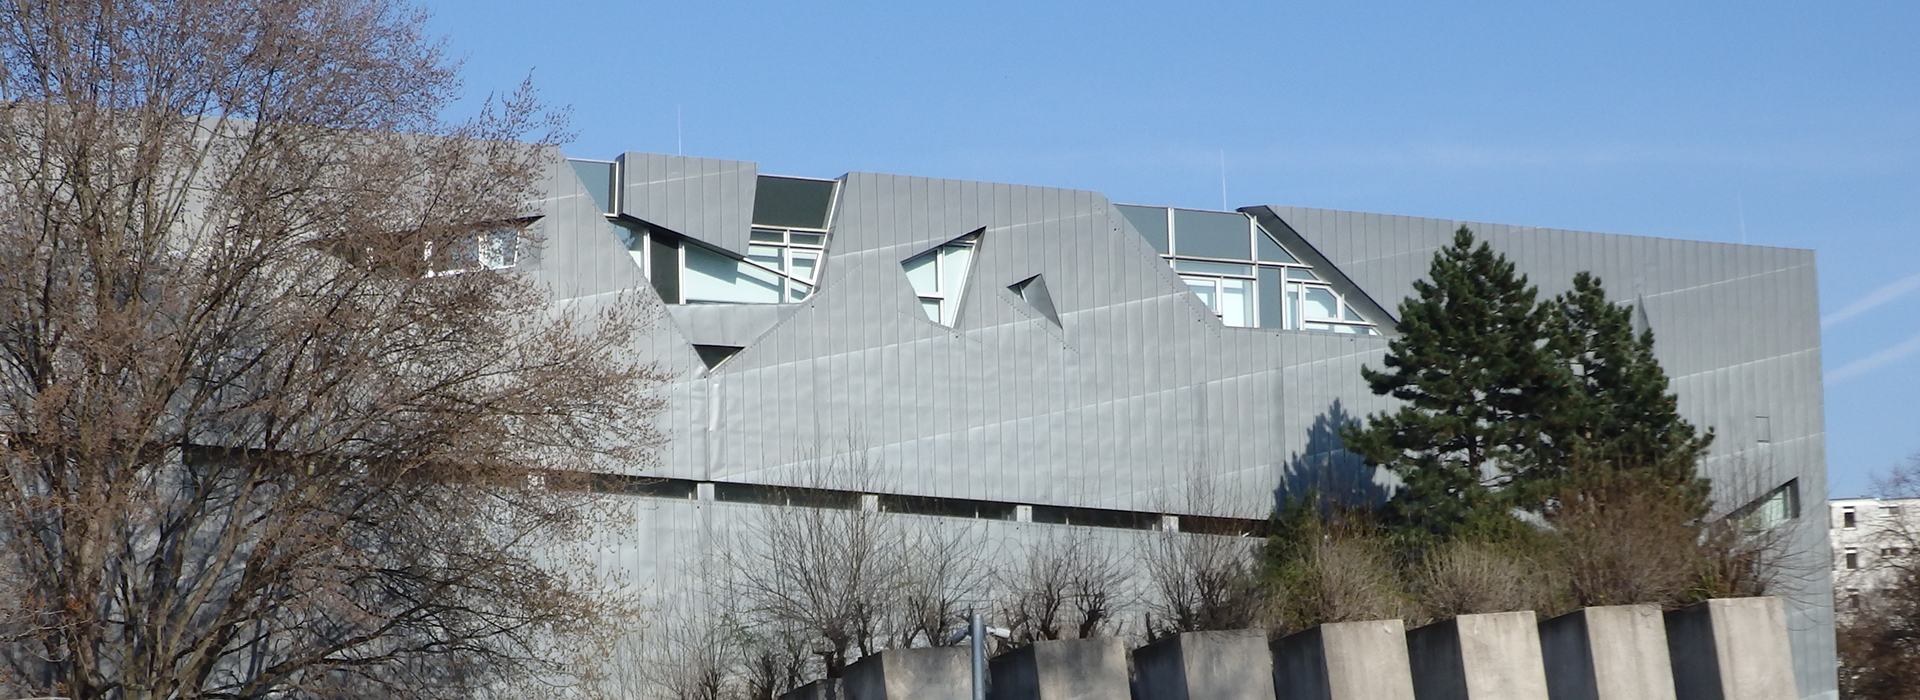 Il museo ebraico di Libeskind a Berlino